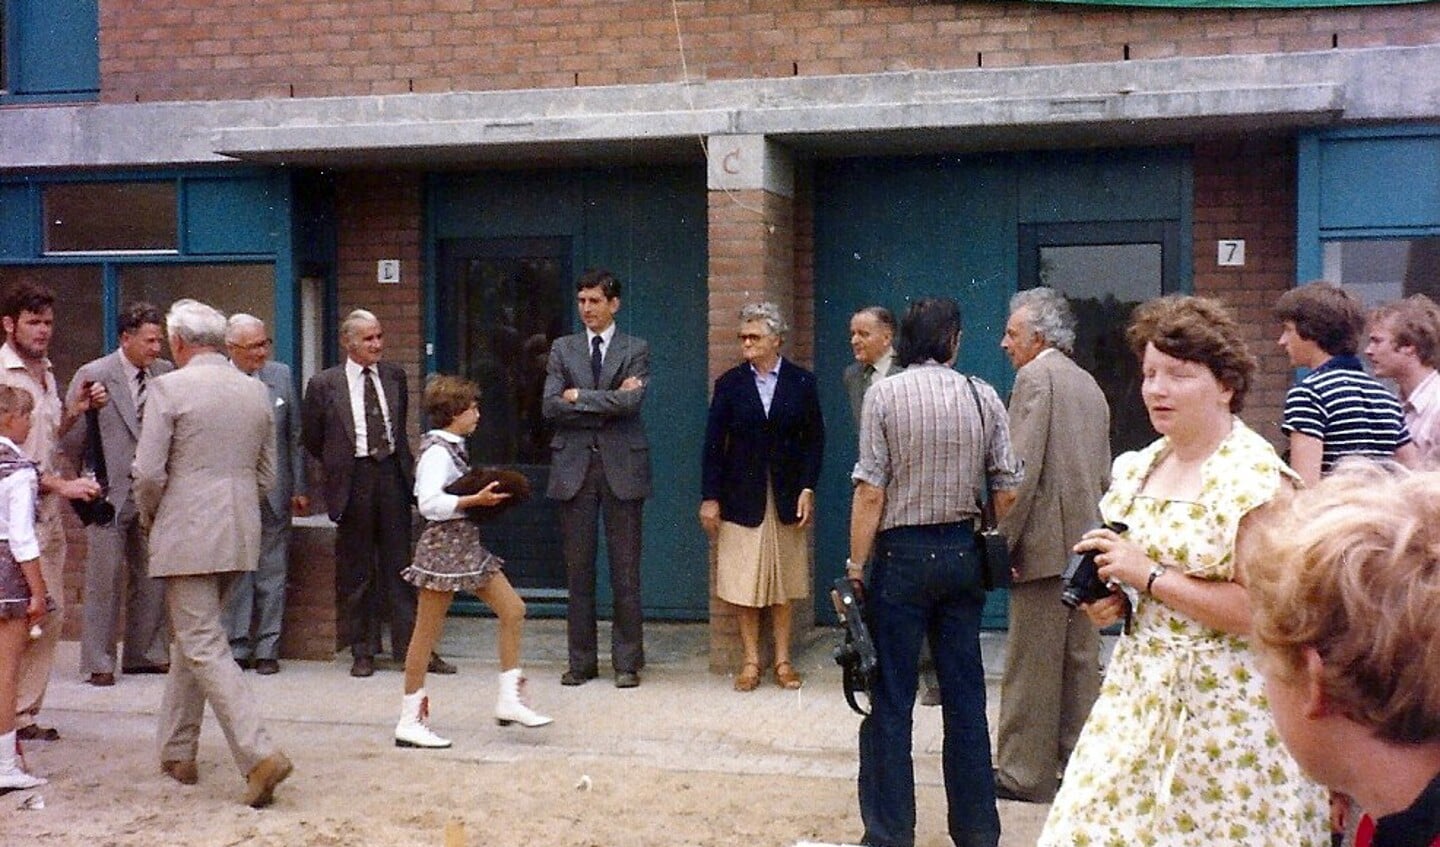 De opening op 14 juni 1980. Foto uit archief Wout van Winssen